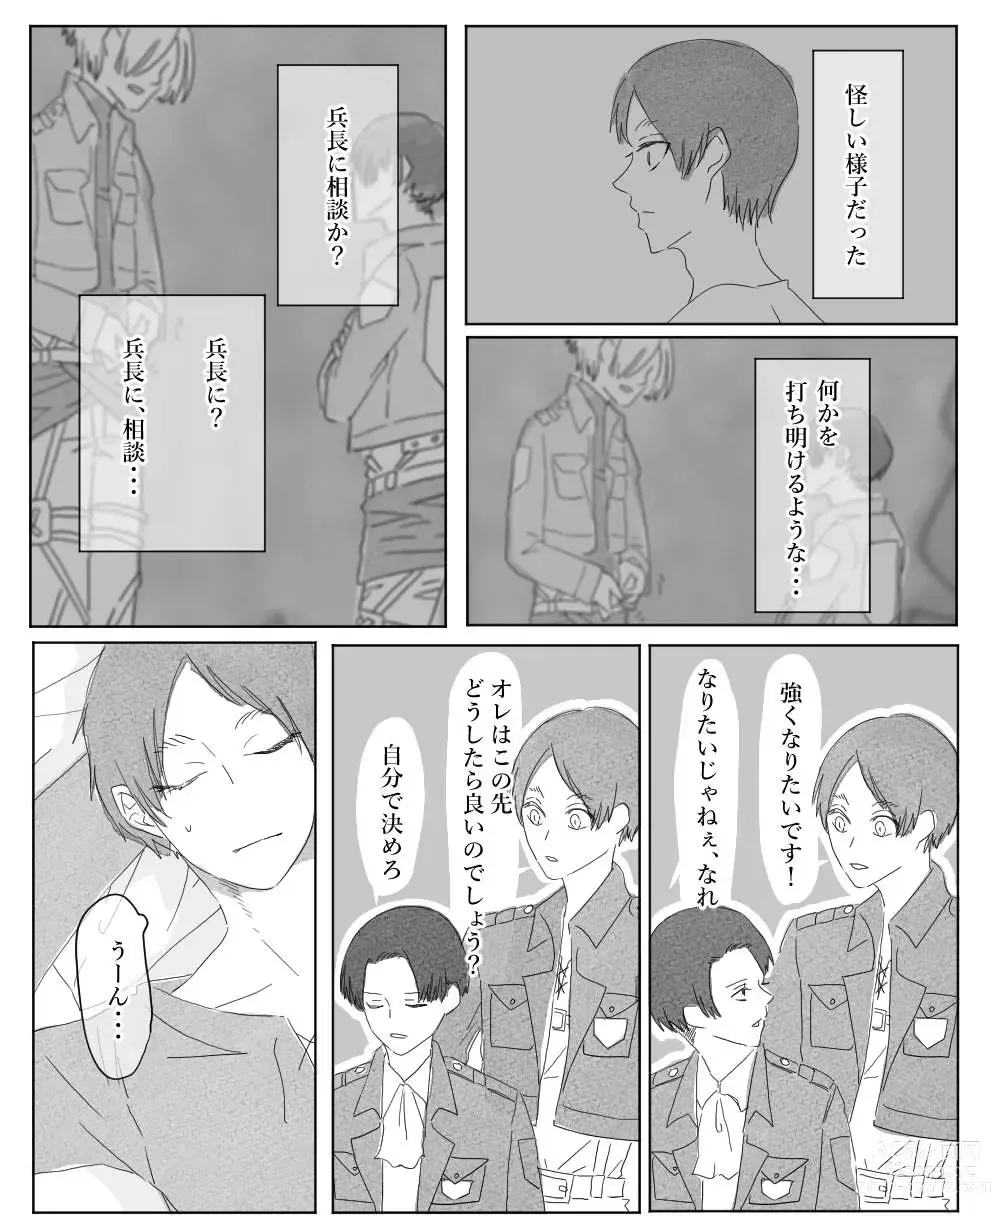 Page 9 of doujinshi Ore wa Anata no Saigo no Otoko